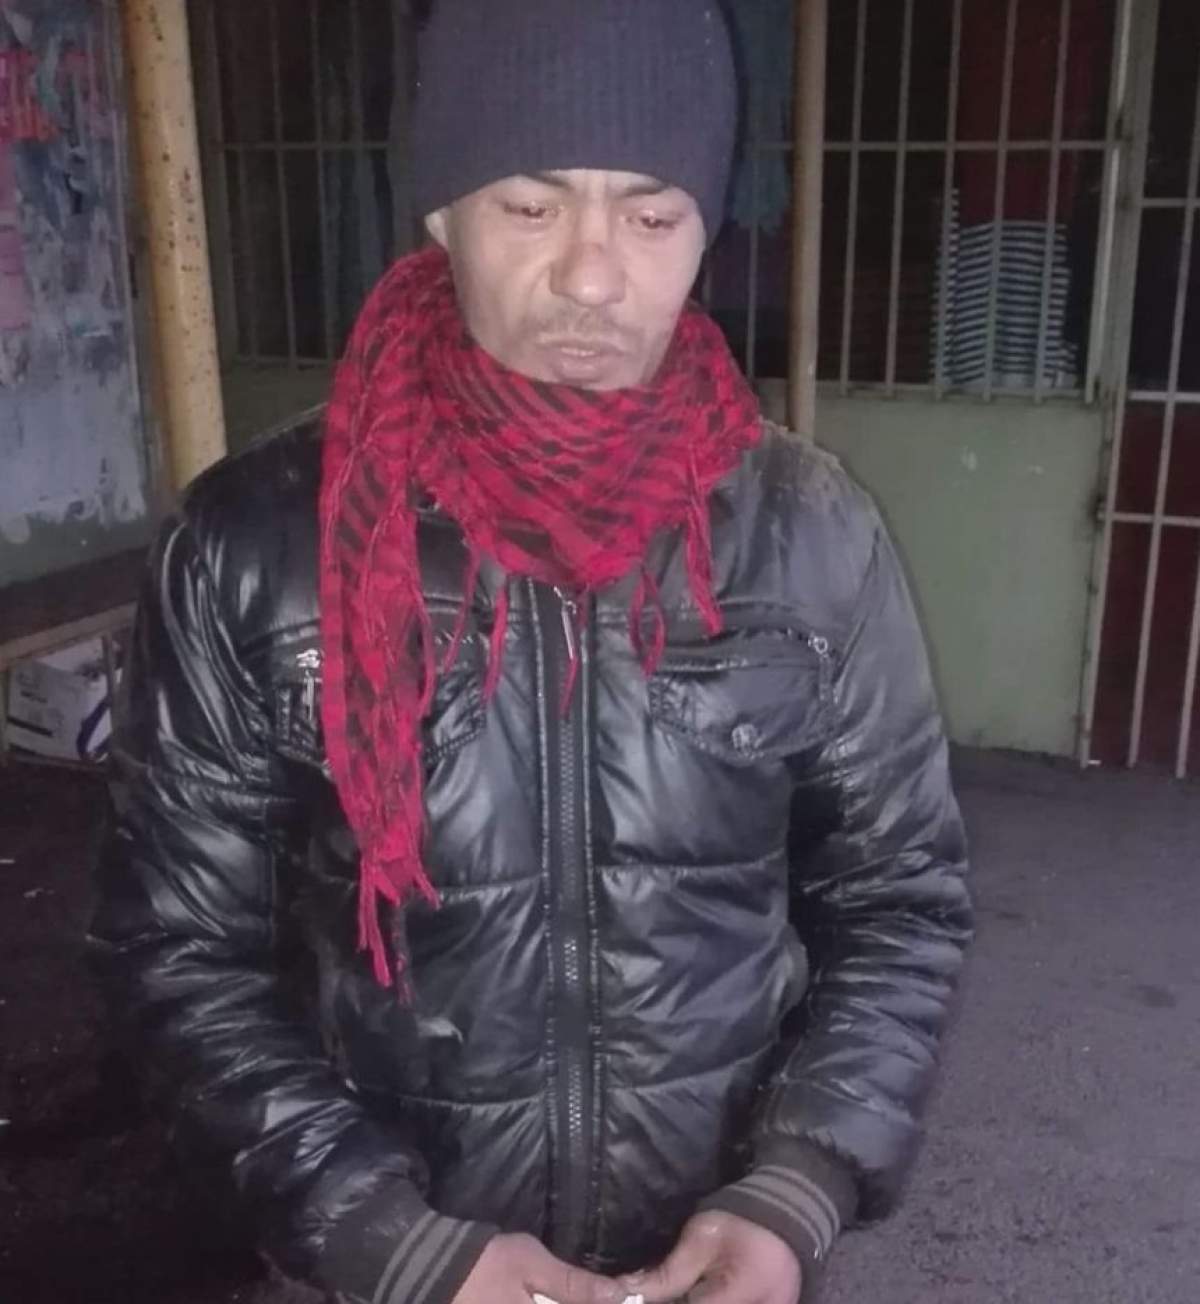 Bărbat acuzat că se masturbează în faţa femeilor, în Târgovişte. Oamenilor le este frică să mai iasă din case